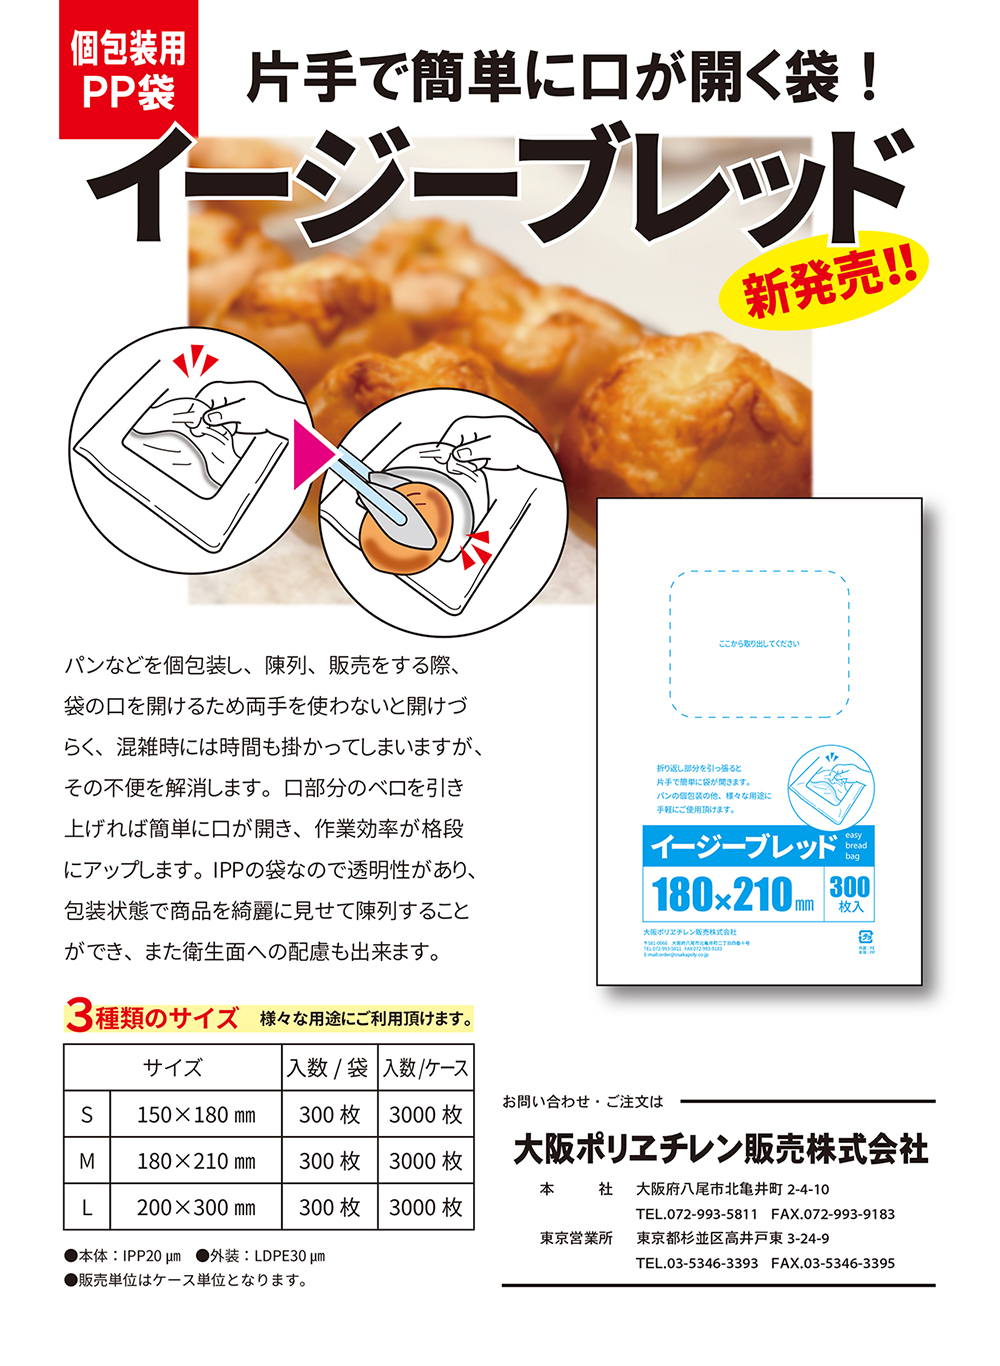 大阪ポリヱチレン販売株式会社 | パン・食品用包装資材と書籍 